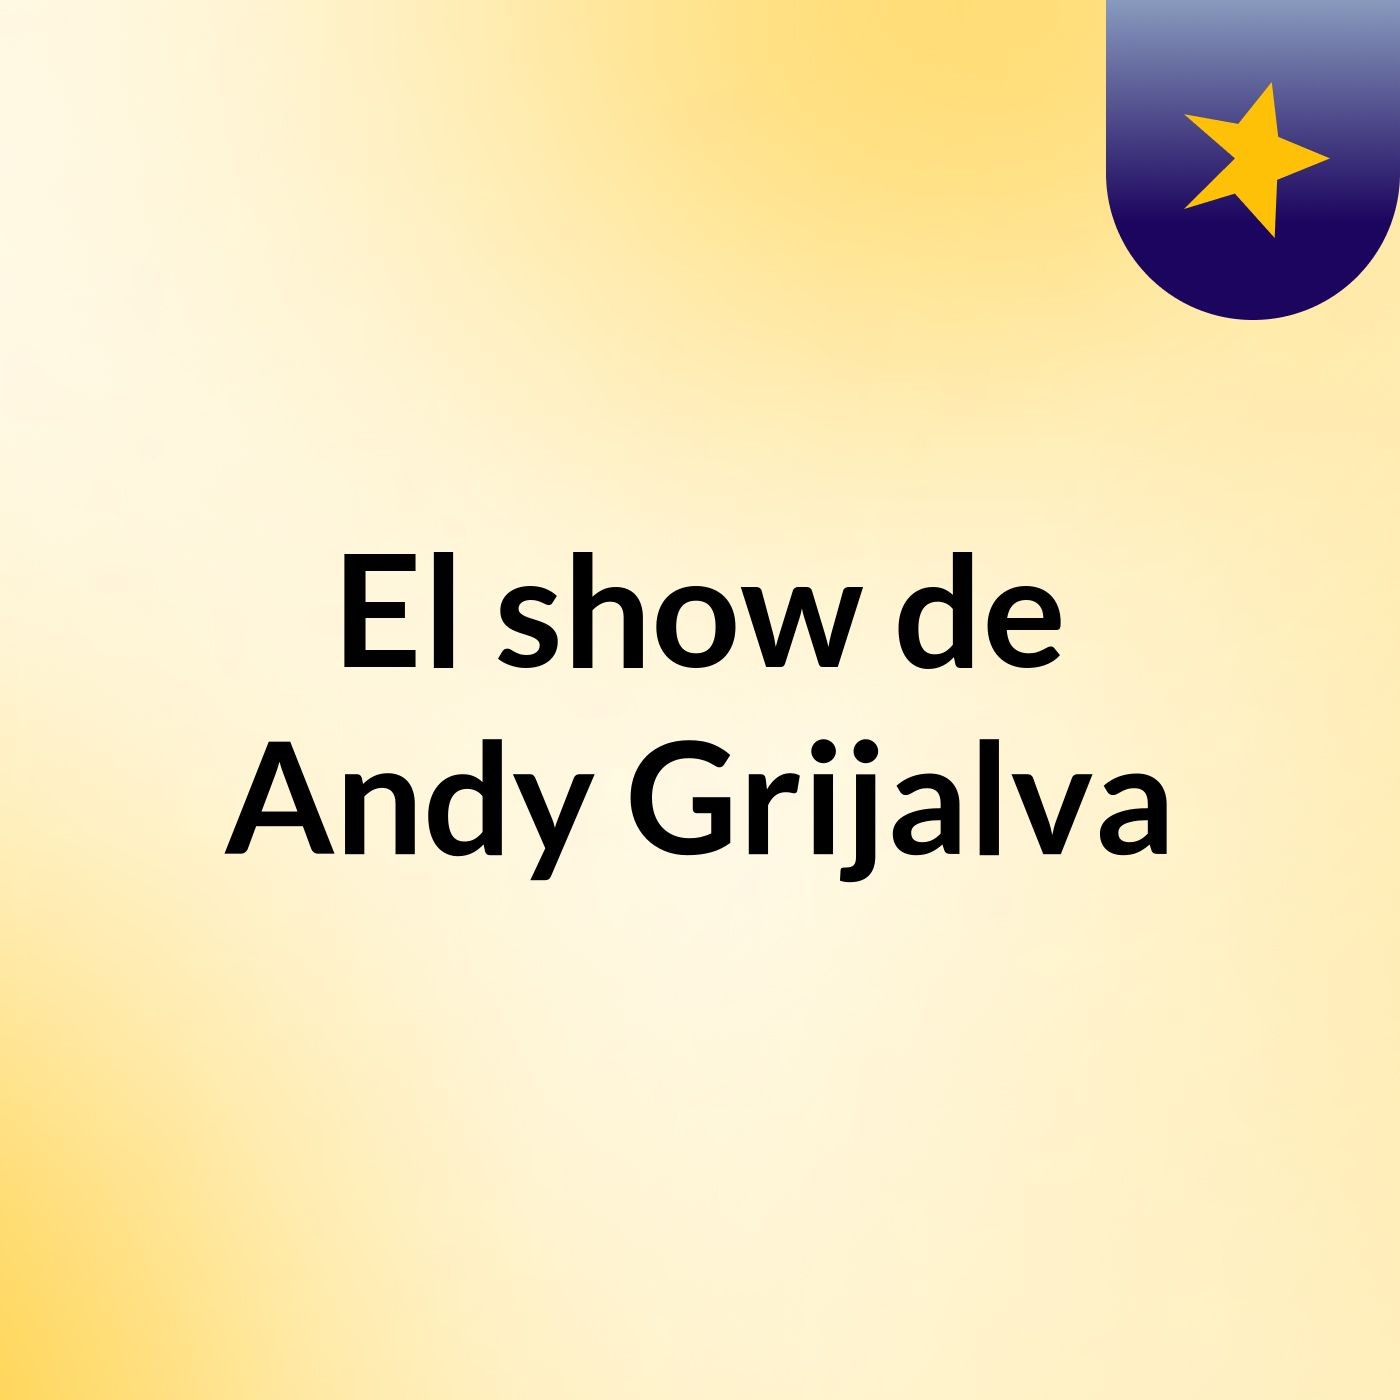 El show de Andy Grijalva